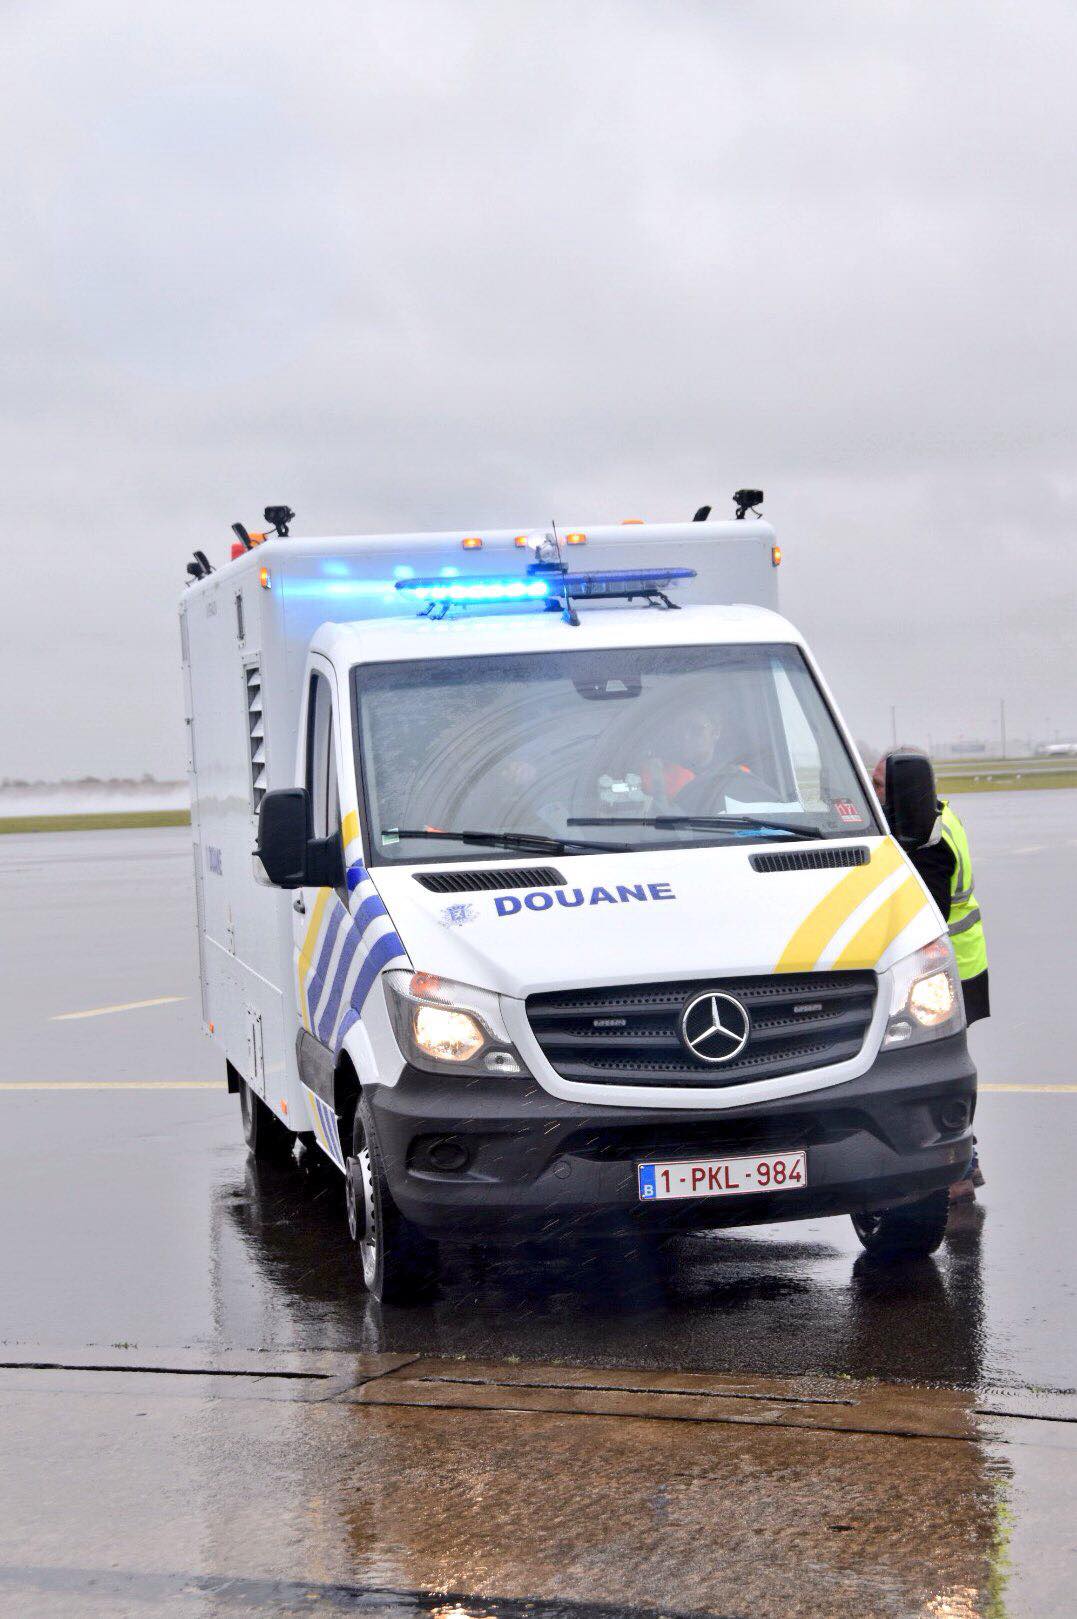 Les Douanes inaugurent un véhicule pour scanner les avions à Brussels Airport 23916510